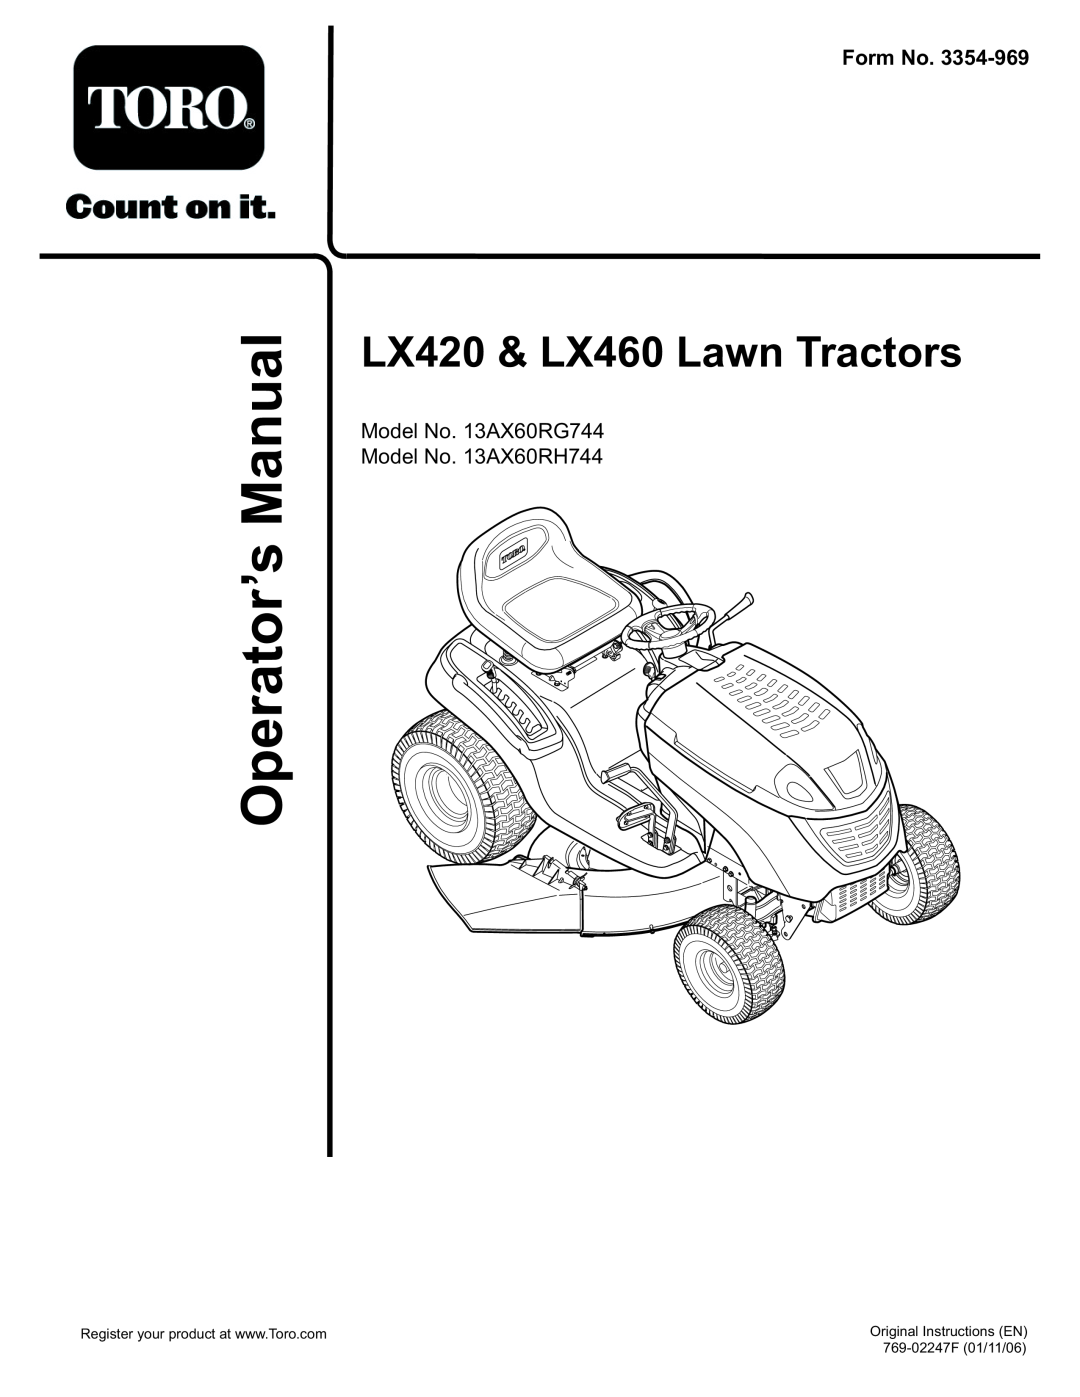 Toro LX420, LX460 manual ManualOperator’s, Form No, LX420 & LX460 Lawn Tractors, Original Instructions EN 